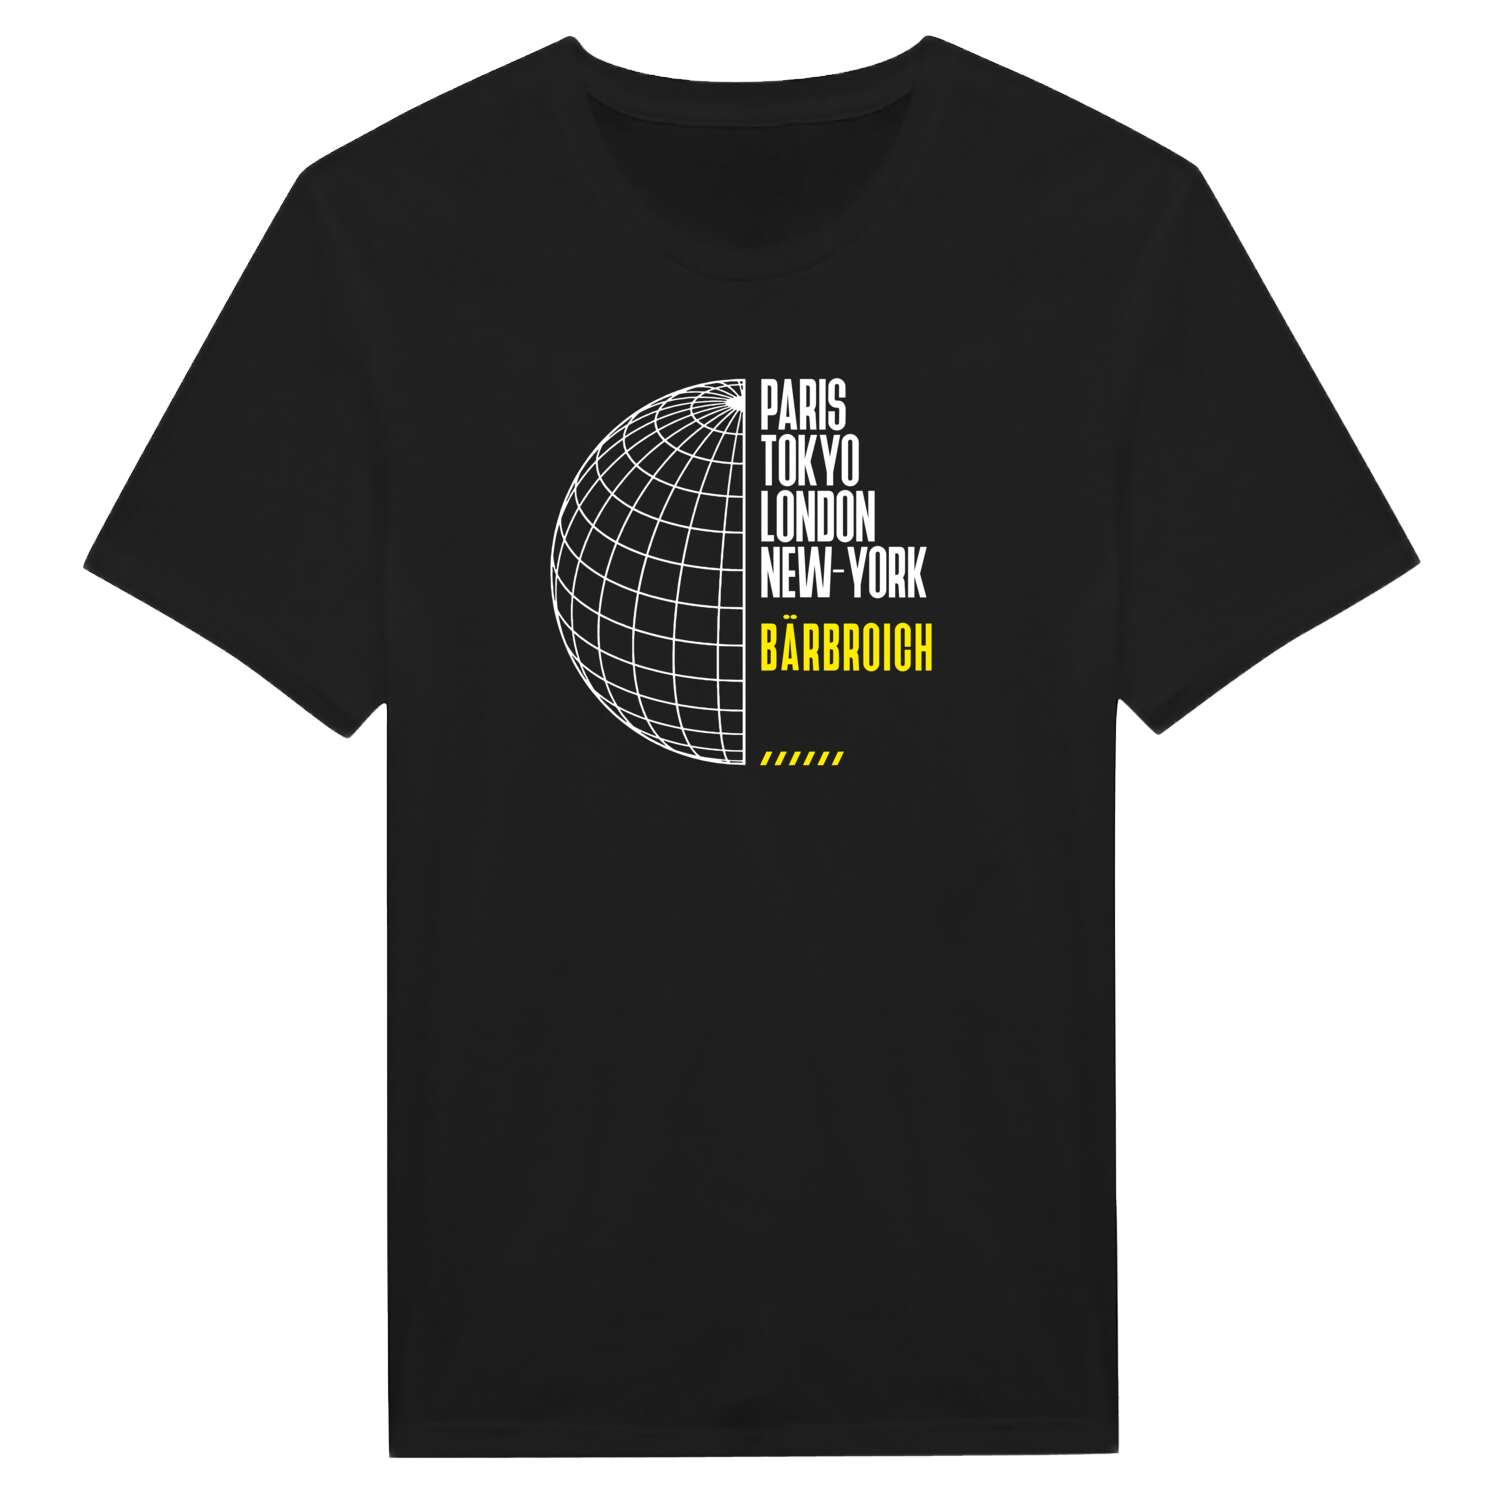 Bärbroich T-Shirt »Paris Tokyo London«